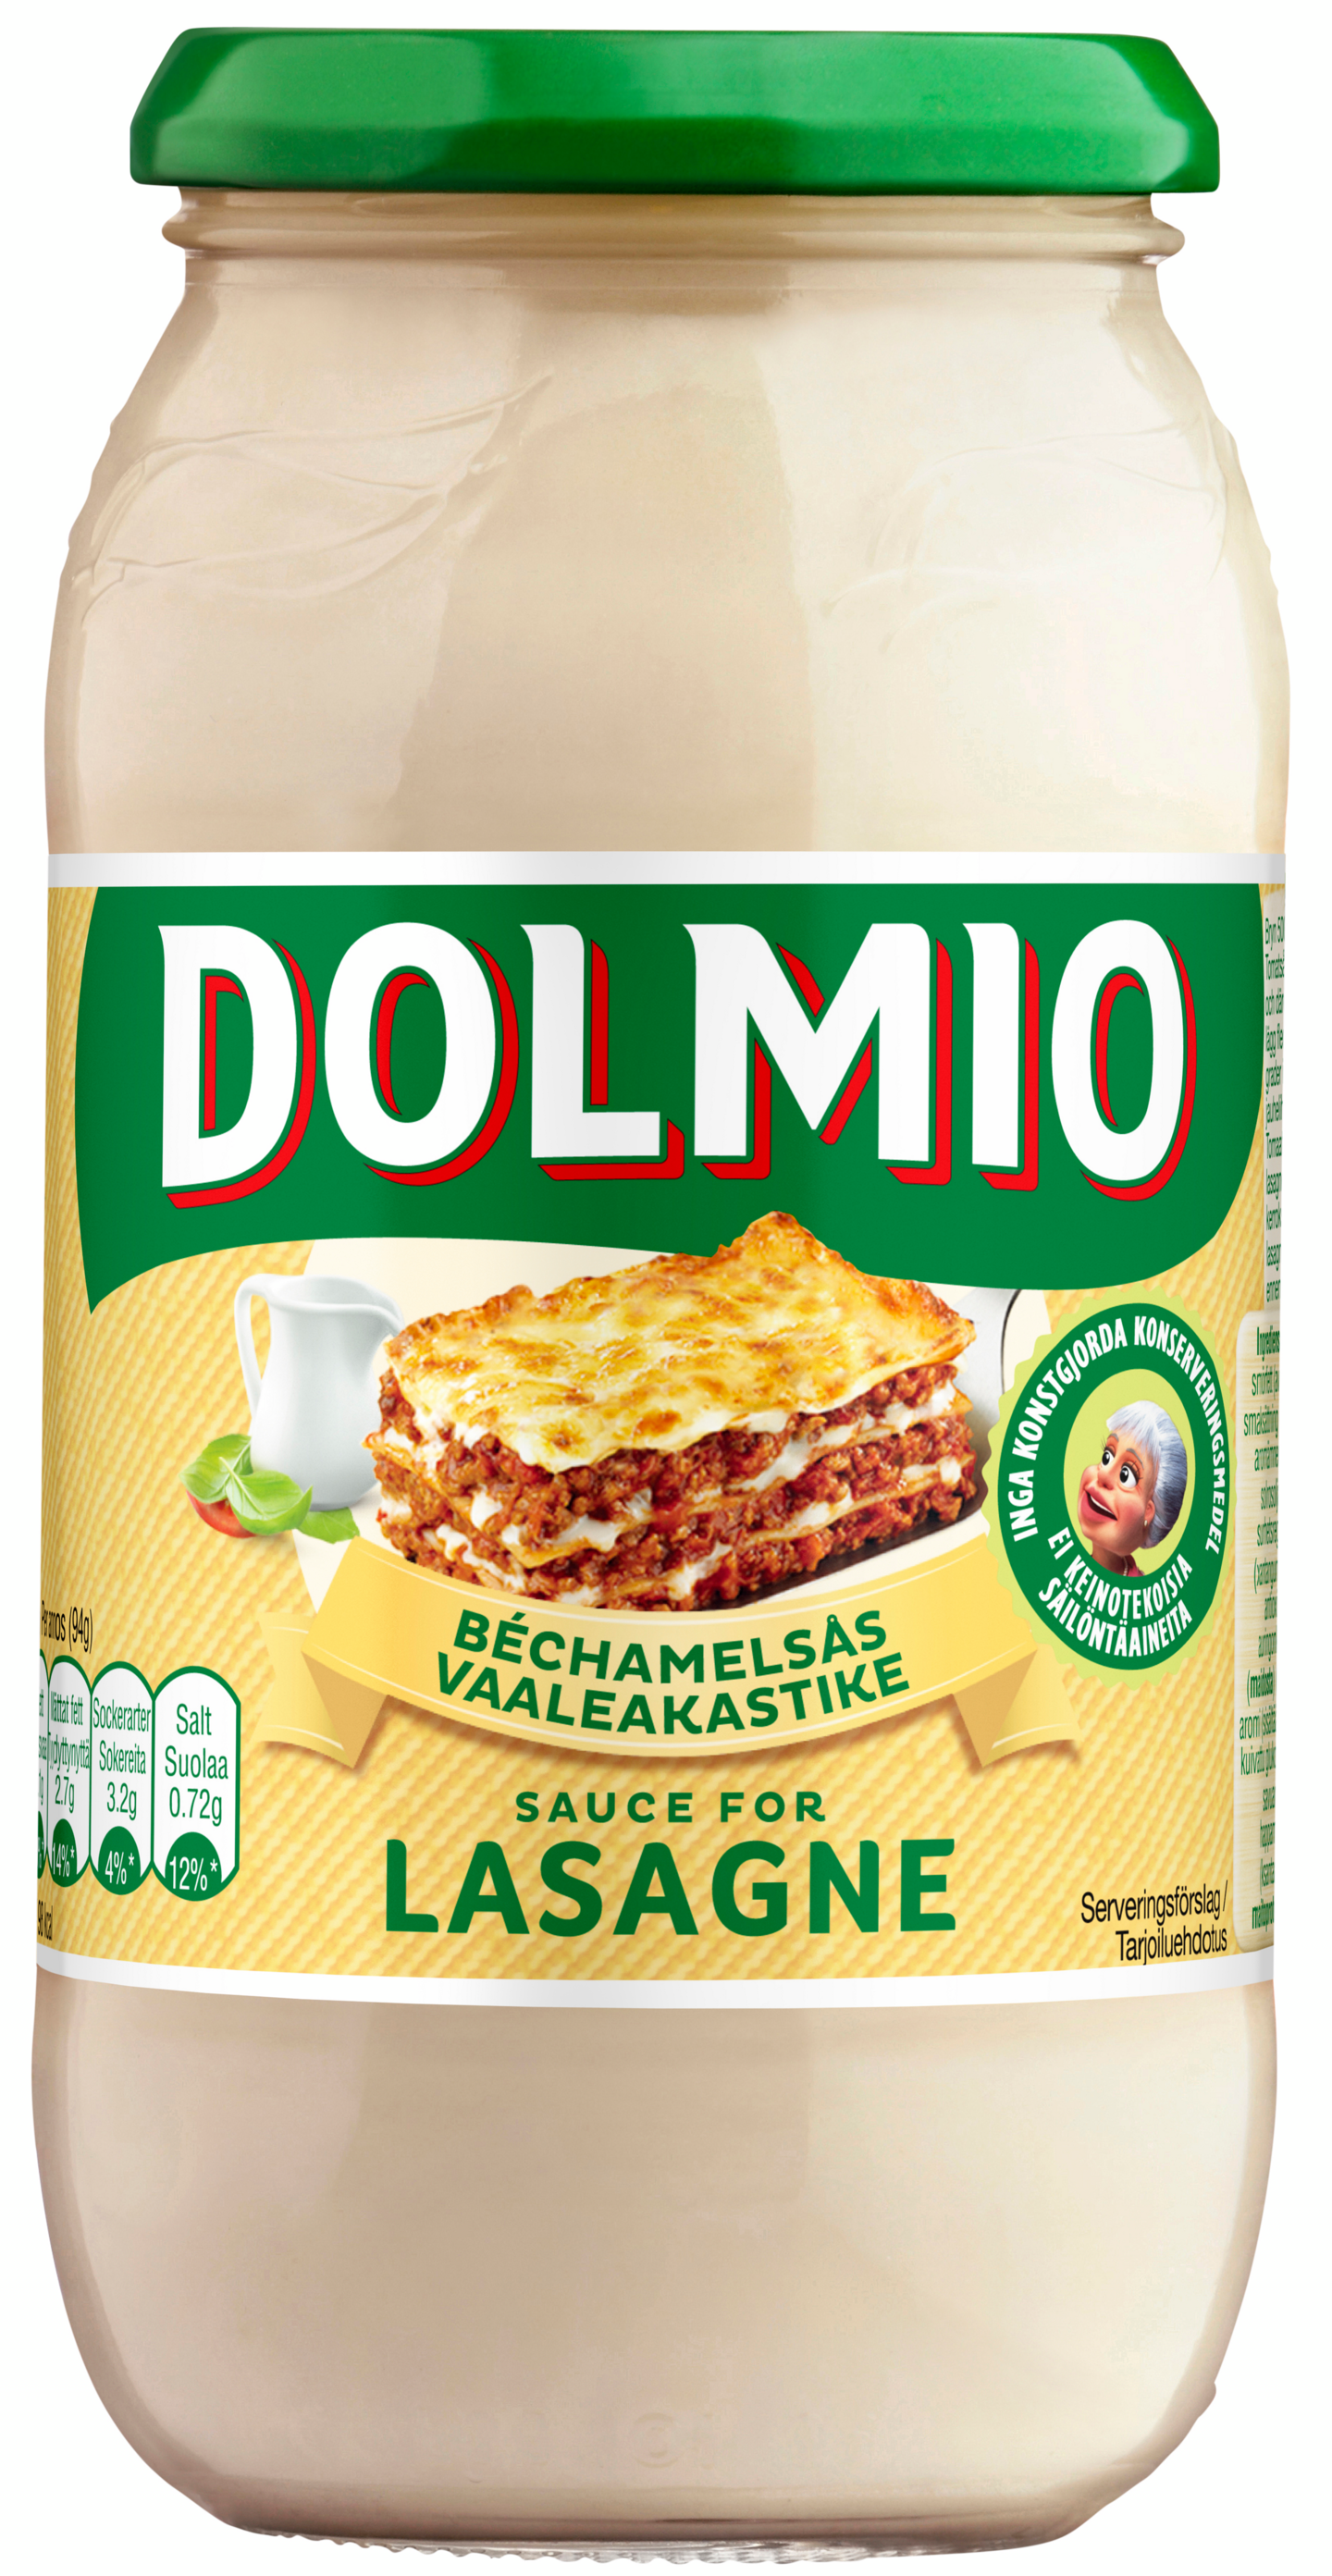 Dolmio lasagne valkokastike 470g